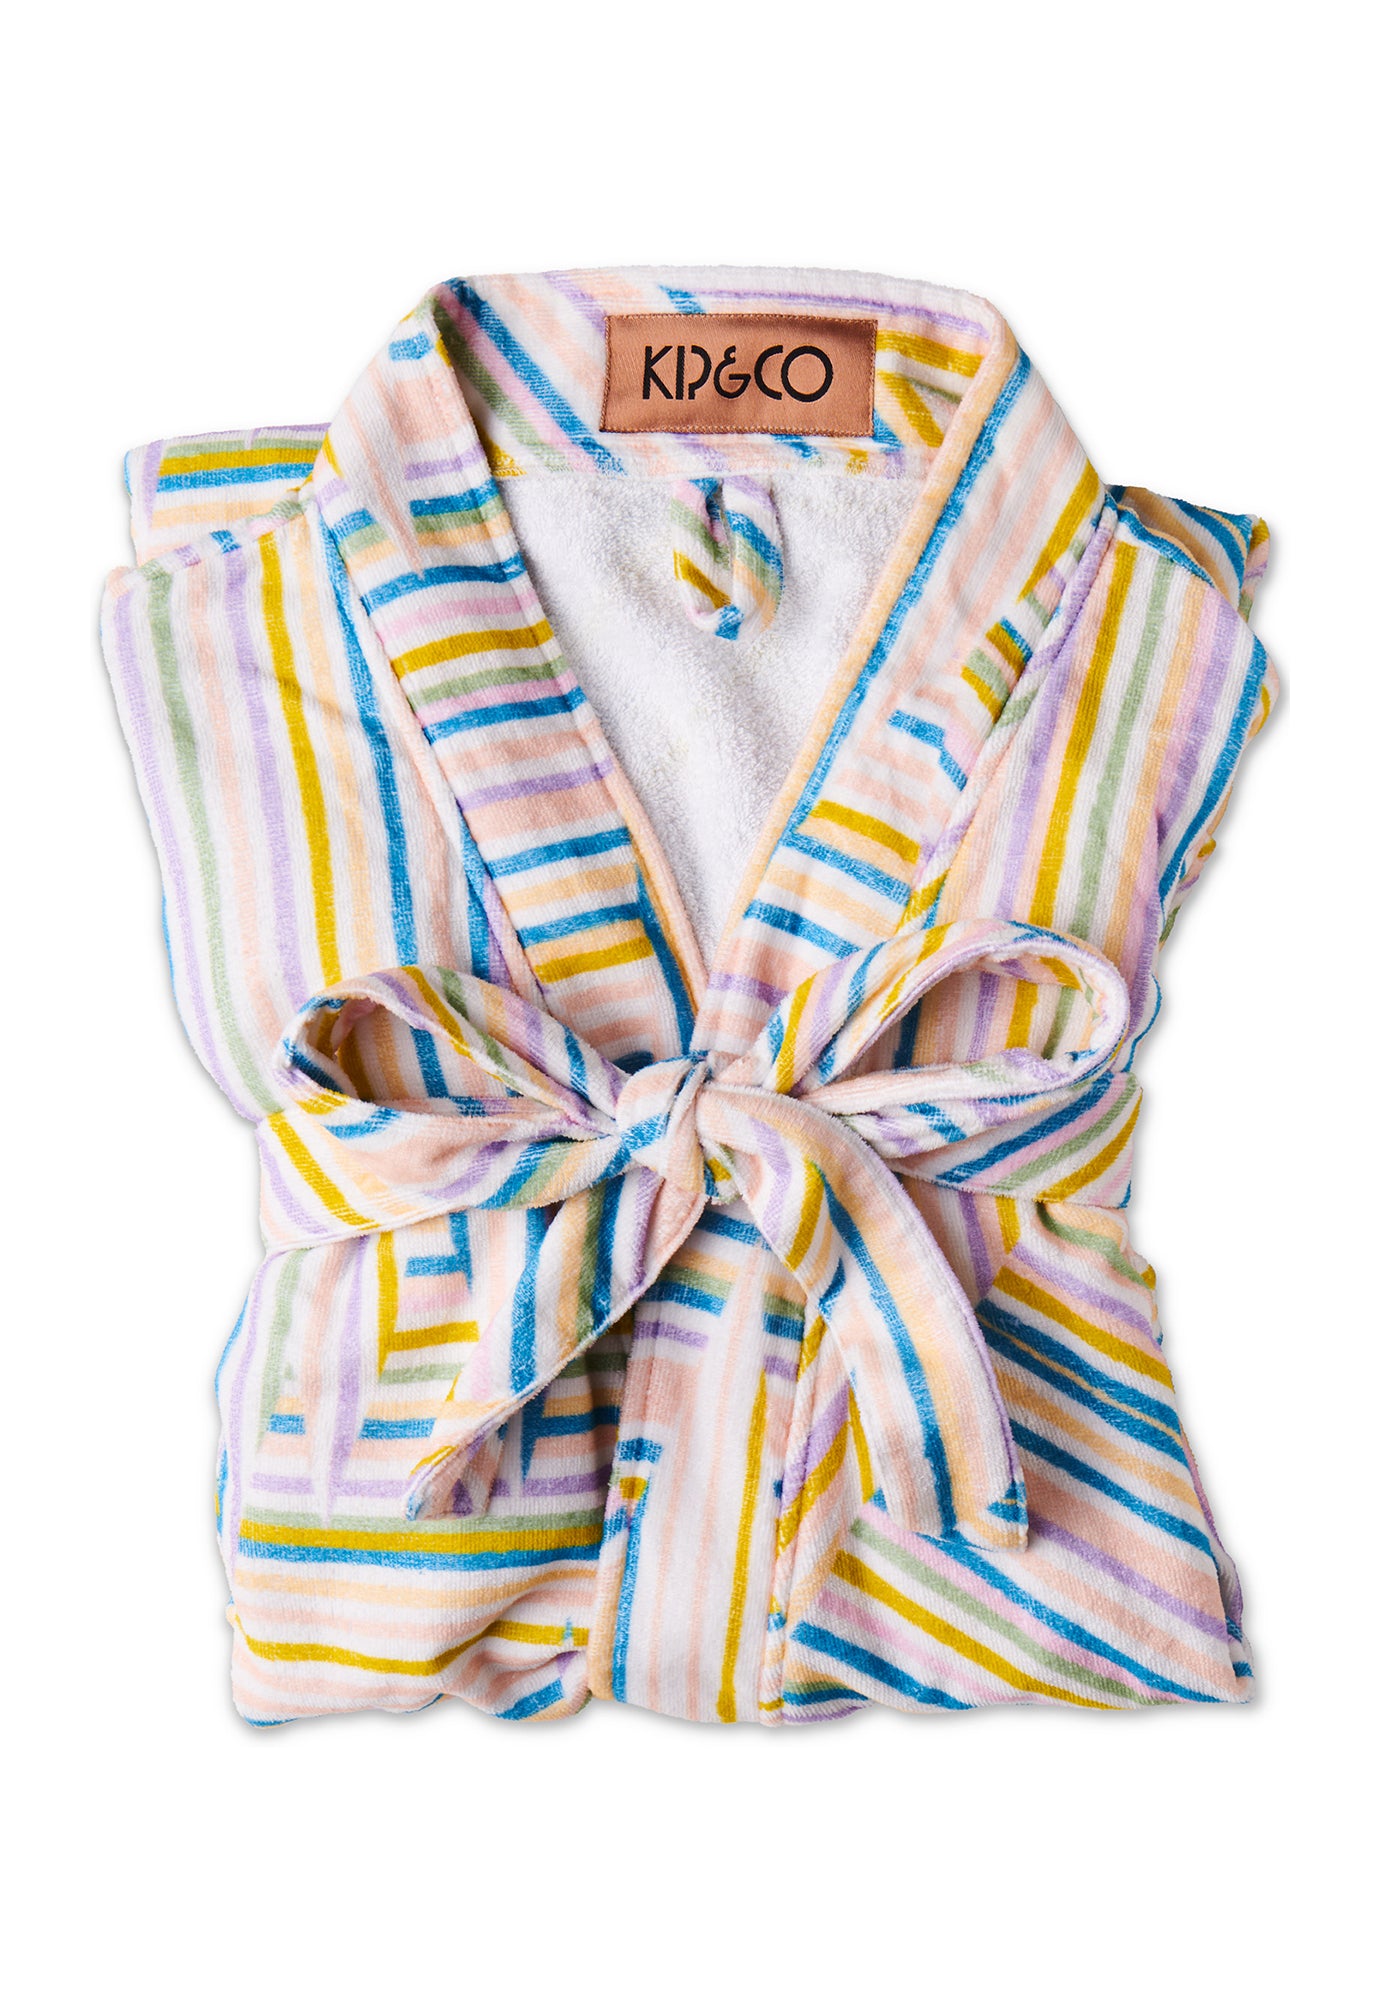 kip&co - stripes of paros printed terry bath robe